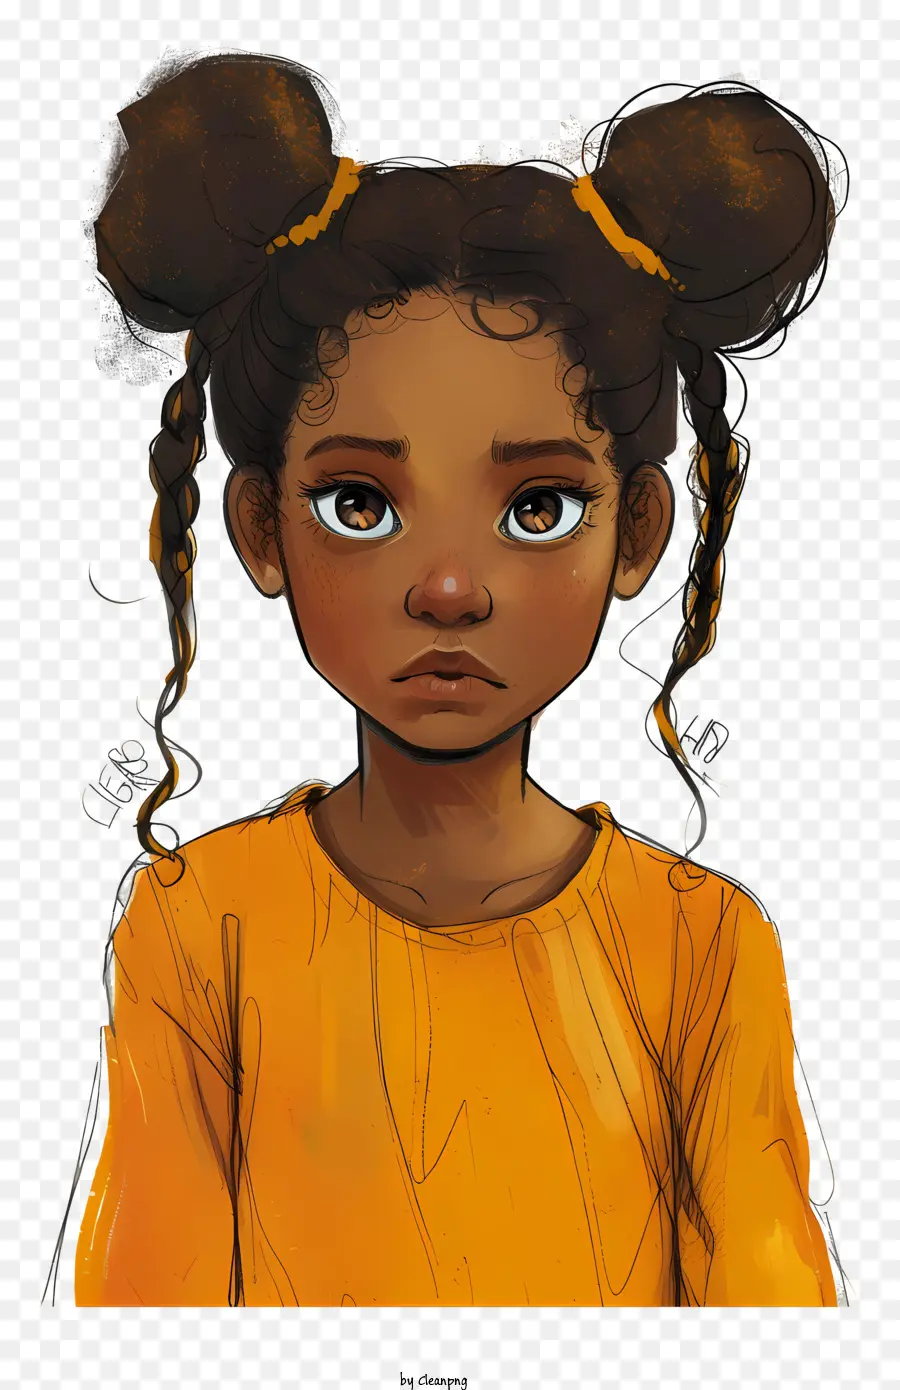 kleines Mädchen - Darstellendes Bild eines nachdenklichen Mädchens mit dunkler Haut und geflochtenem Haar